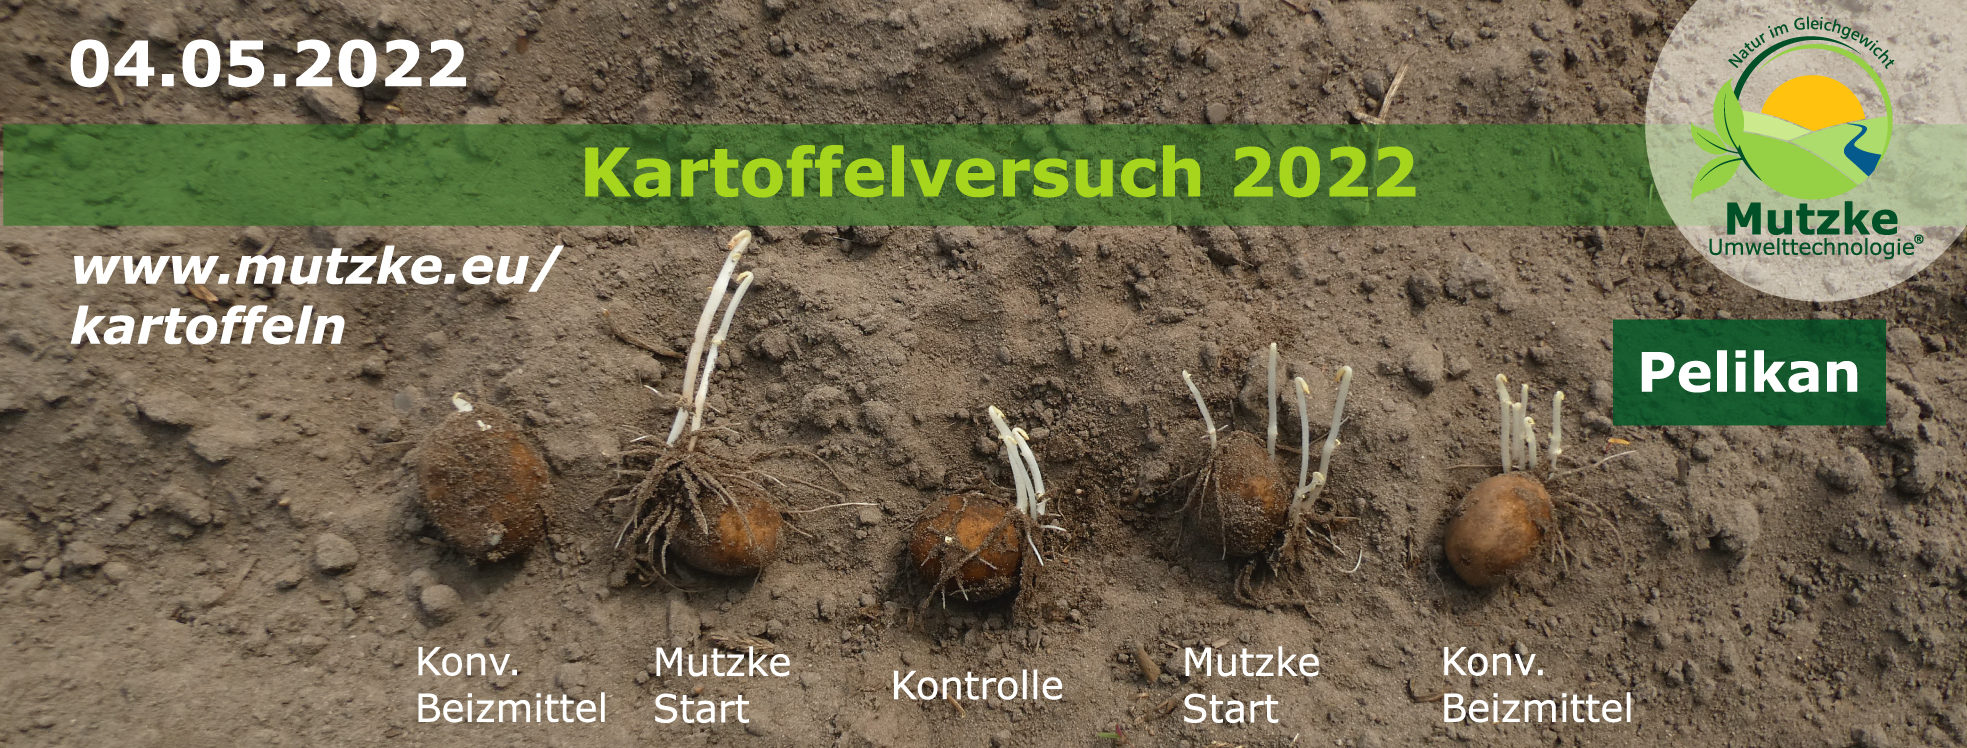 Kartoffelversuch 2022 am 04.05.2022